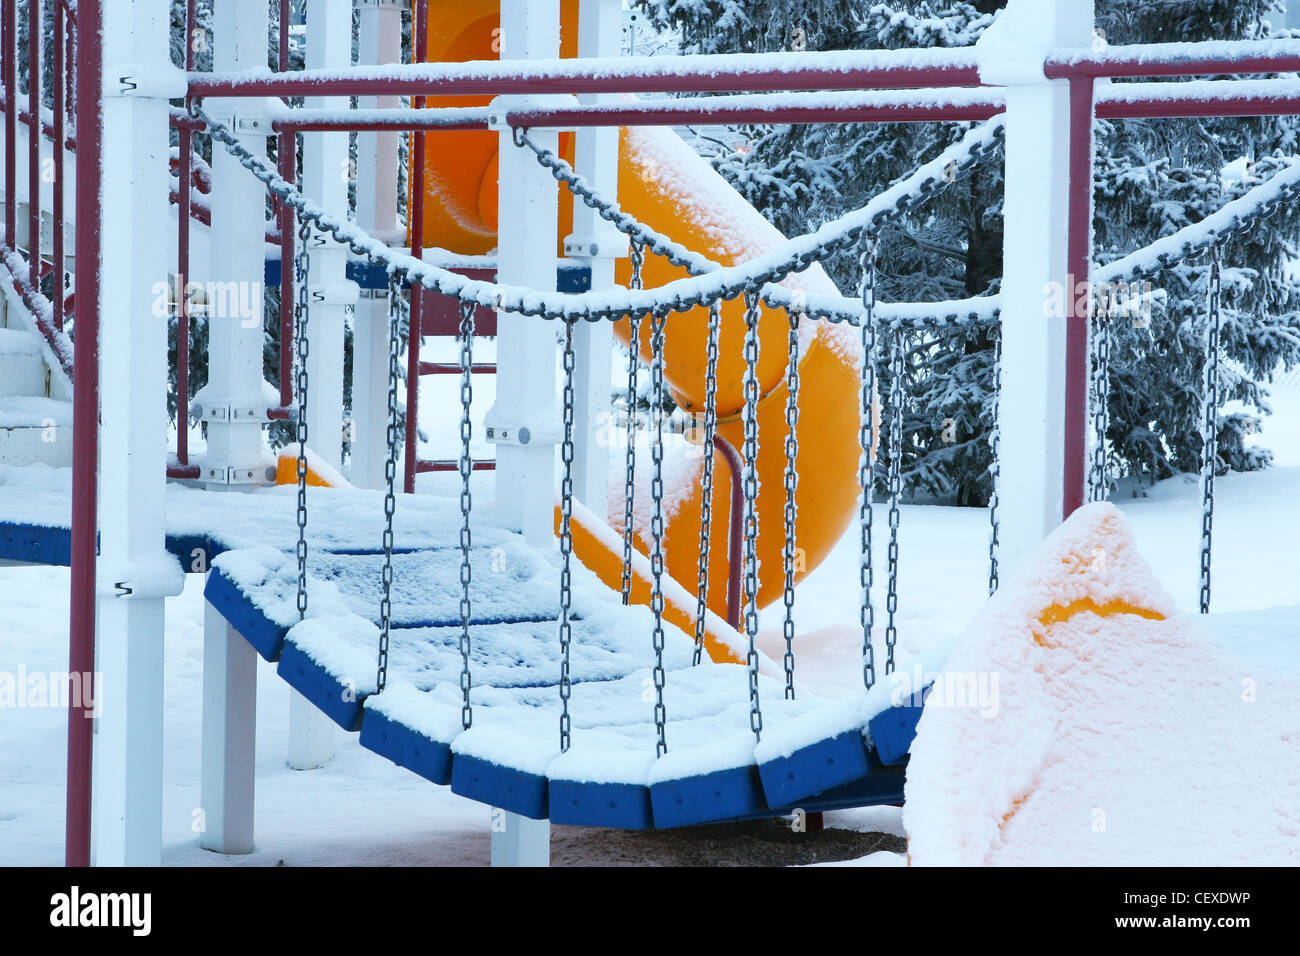 Des scènes d'hiver de Calgary, Alberta, Canada. Aire de jeux pour enfants avec toboggan tubulaire ronde et suspension. Banque D'Images